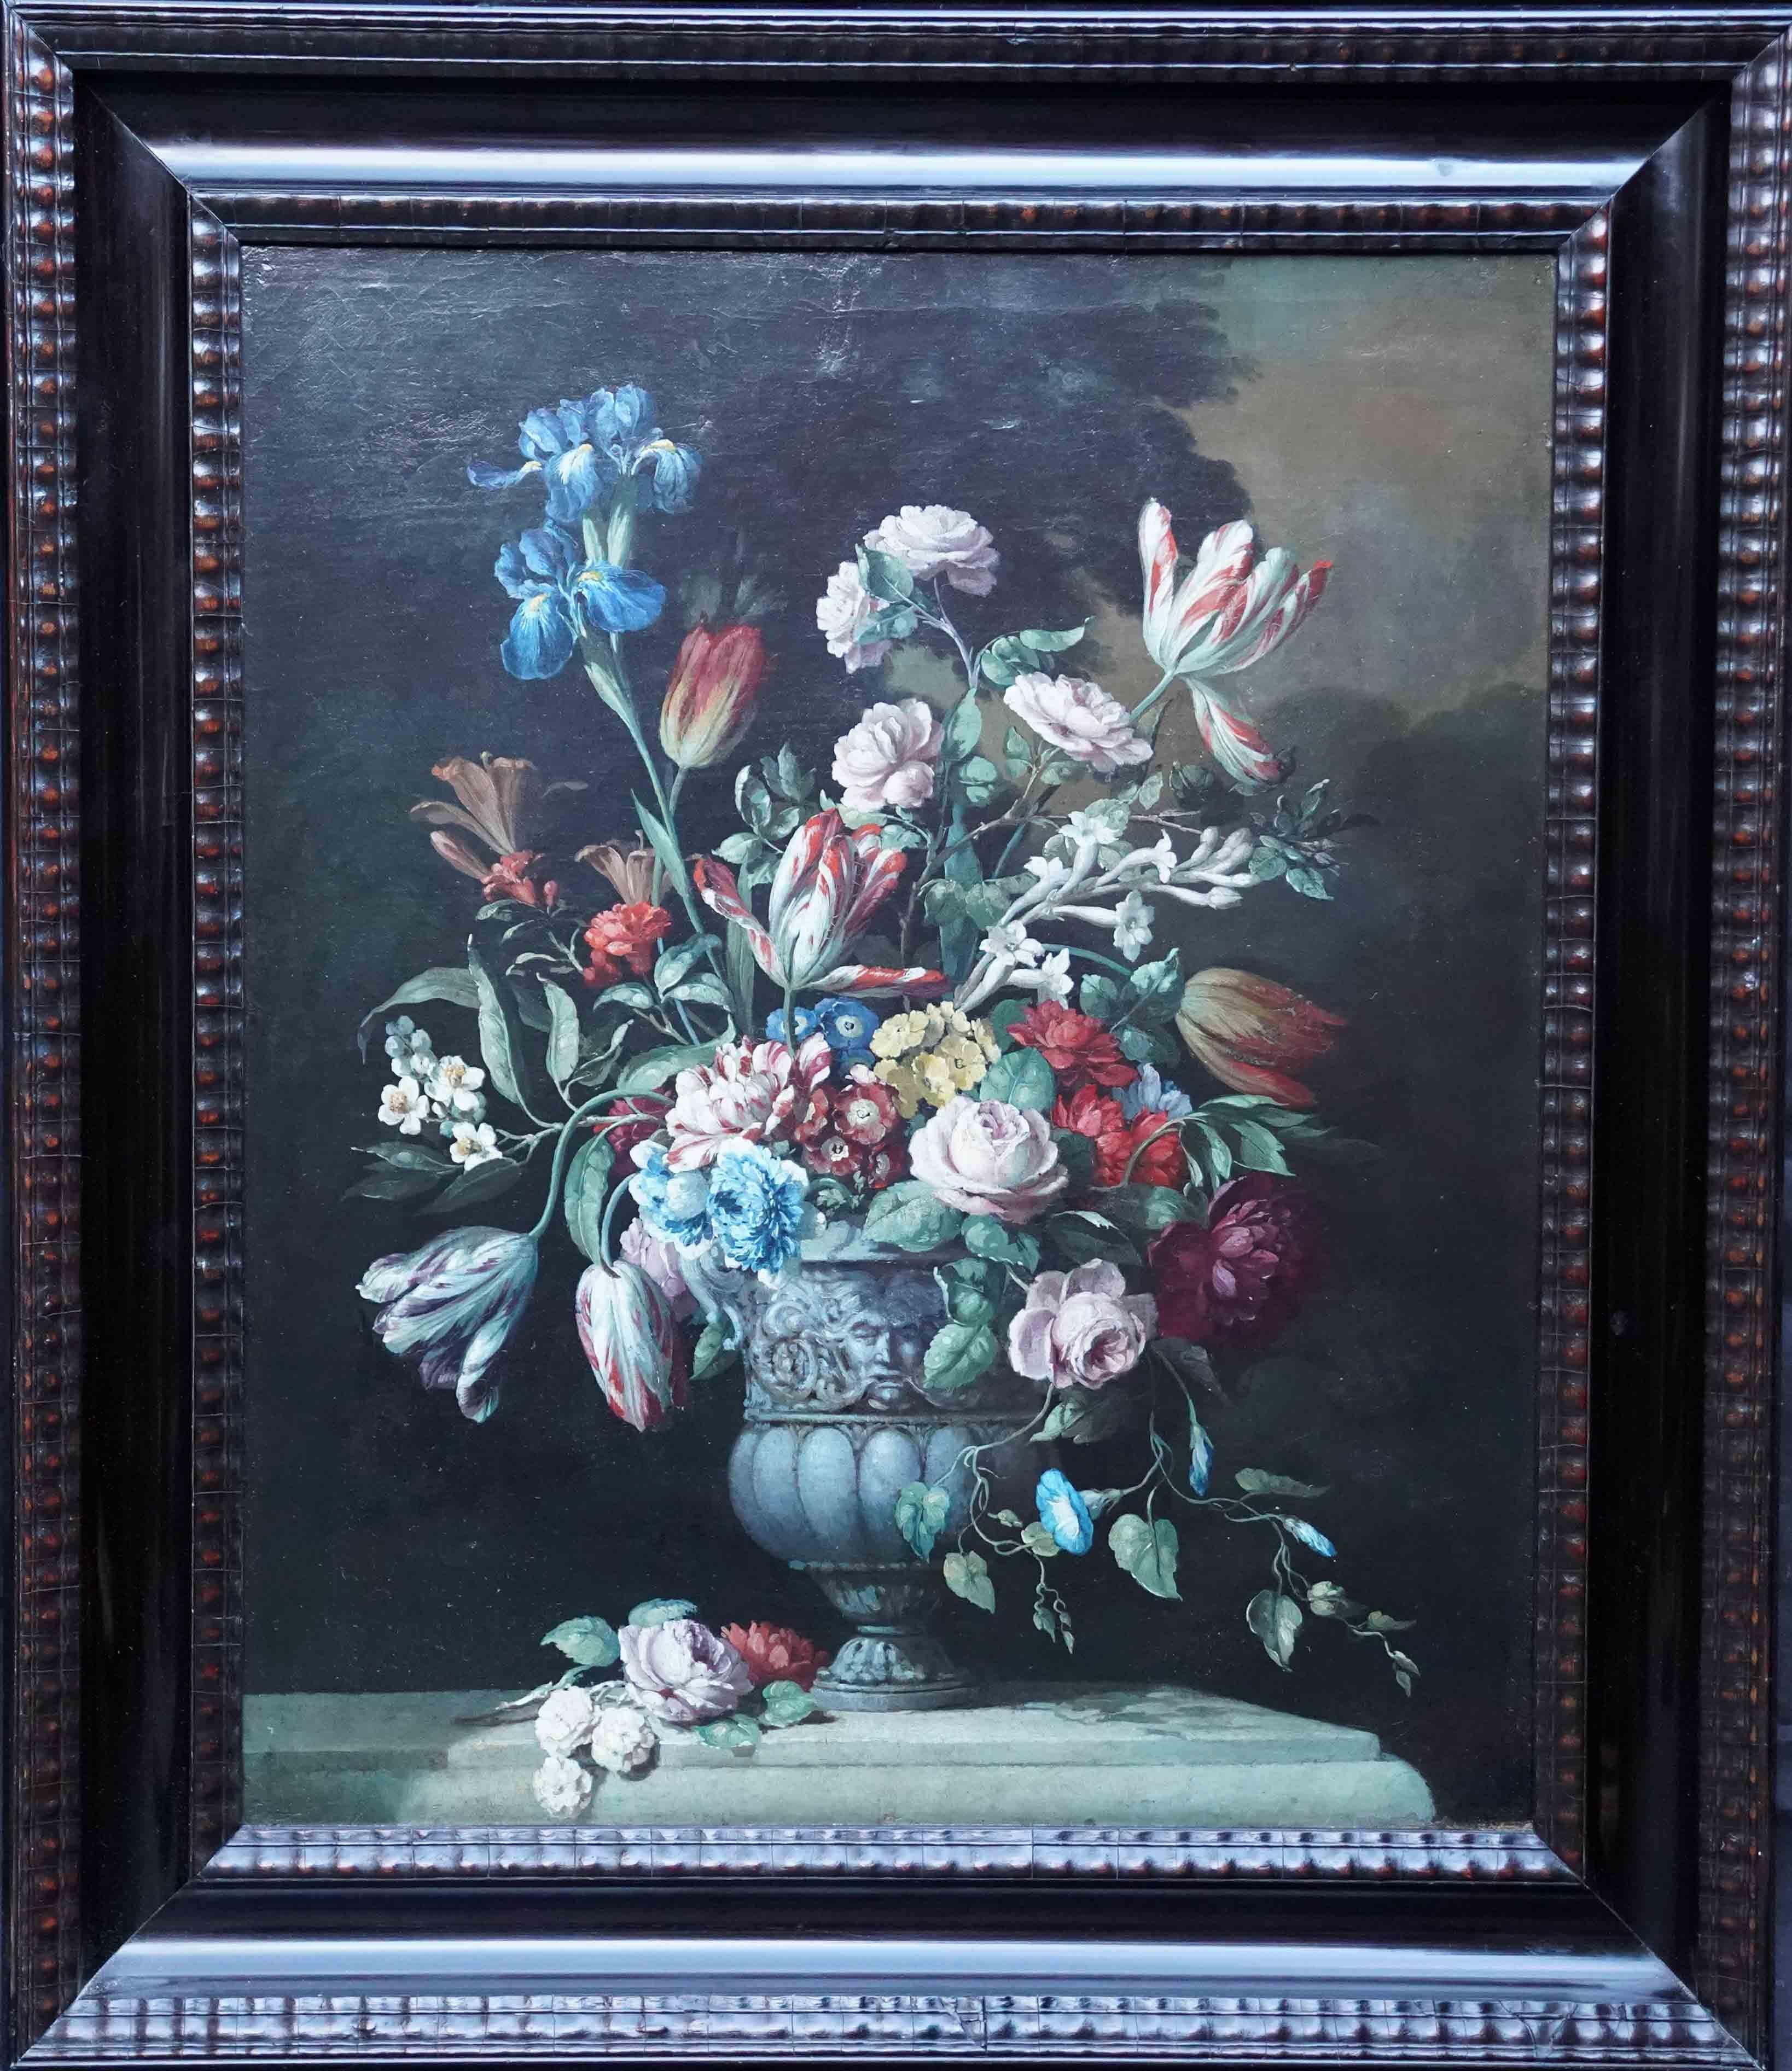 Stillleben mit Blumen in ornamentaler Urne auf Ledge – Ölgemälde eines niederländischen Alten Meisters